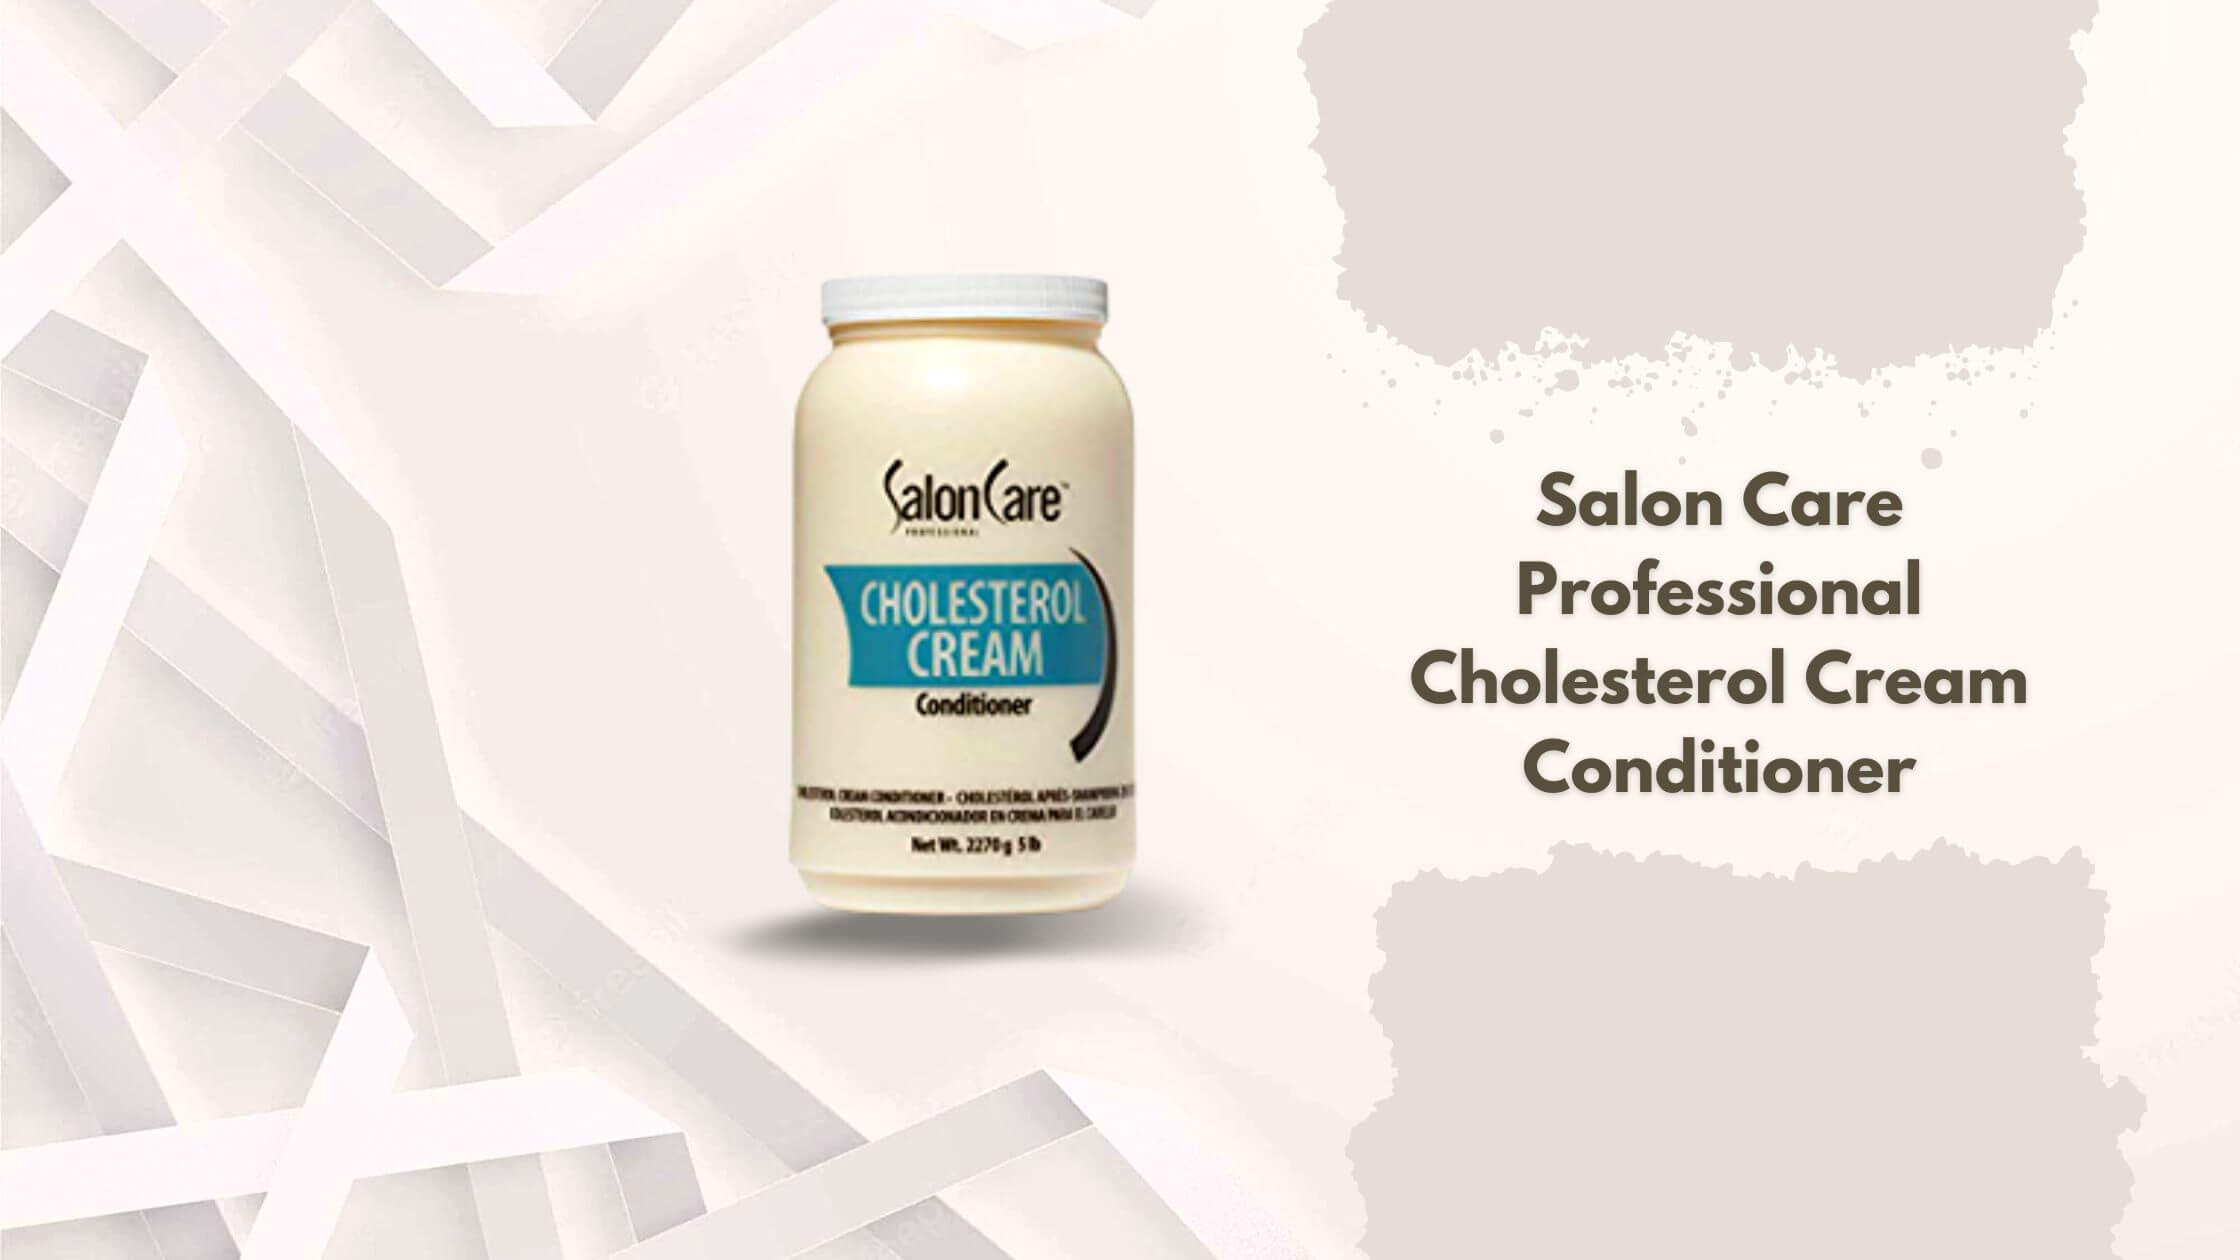 Salon Care Professional Cholesterol Cream Conditioner